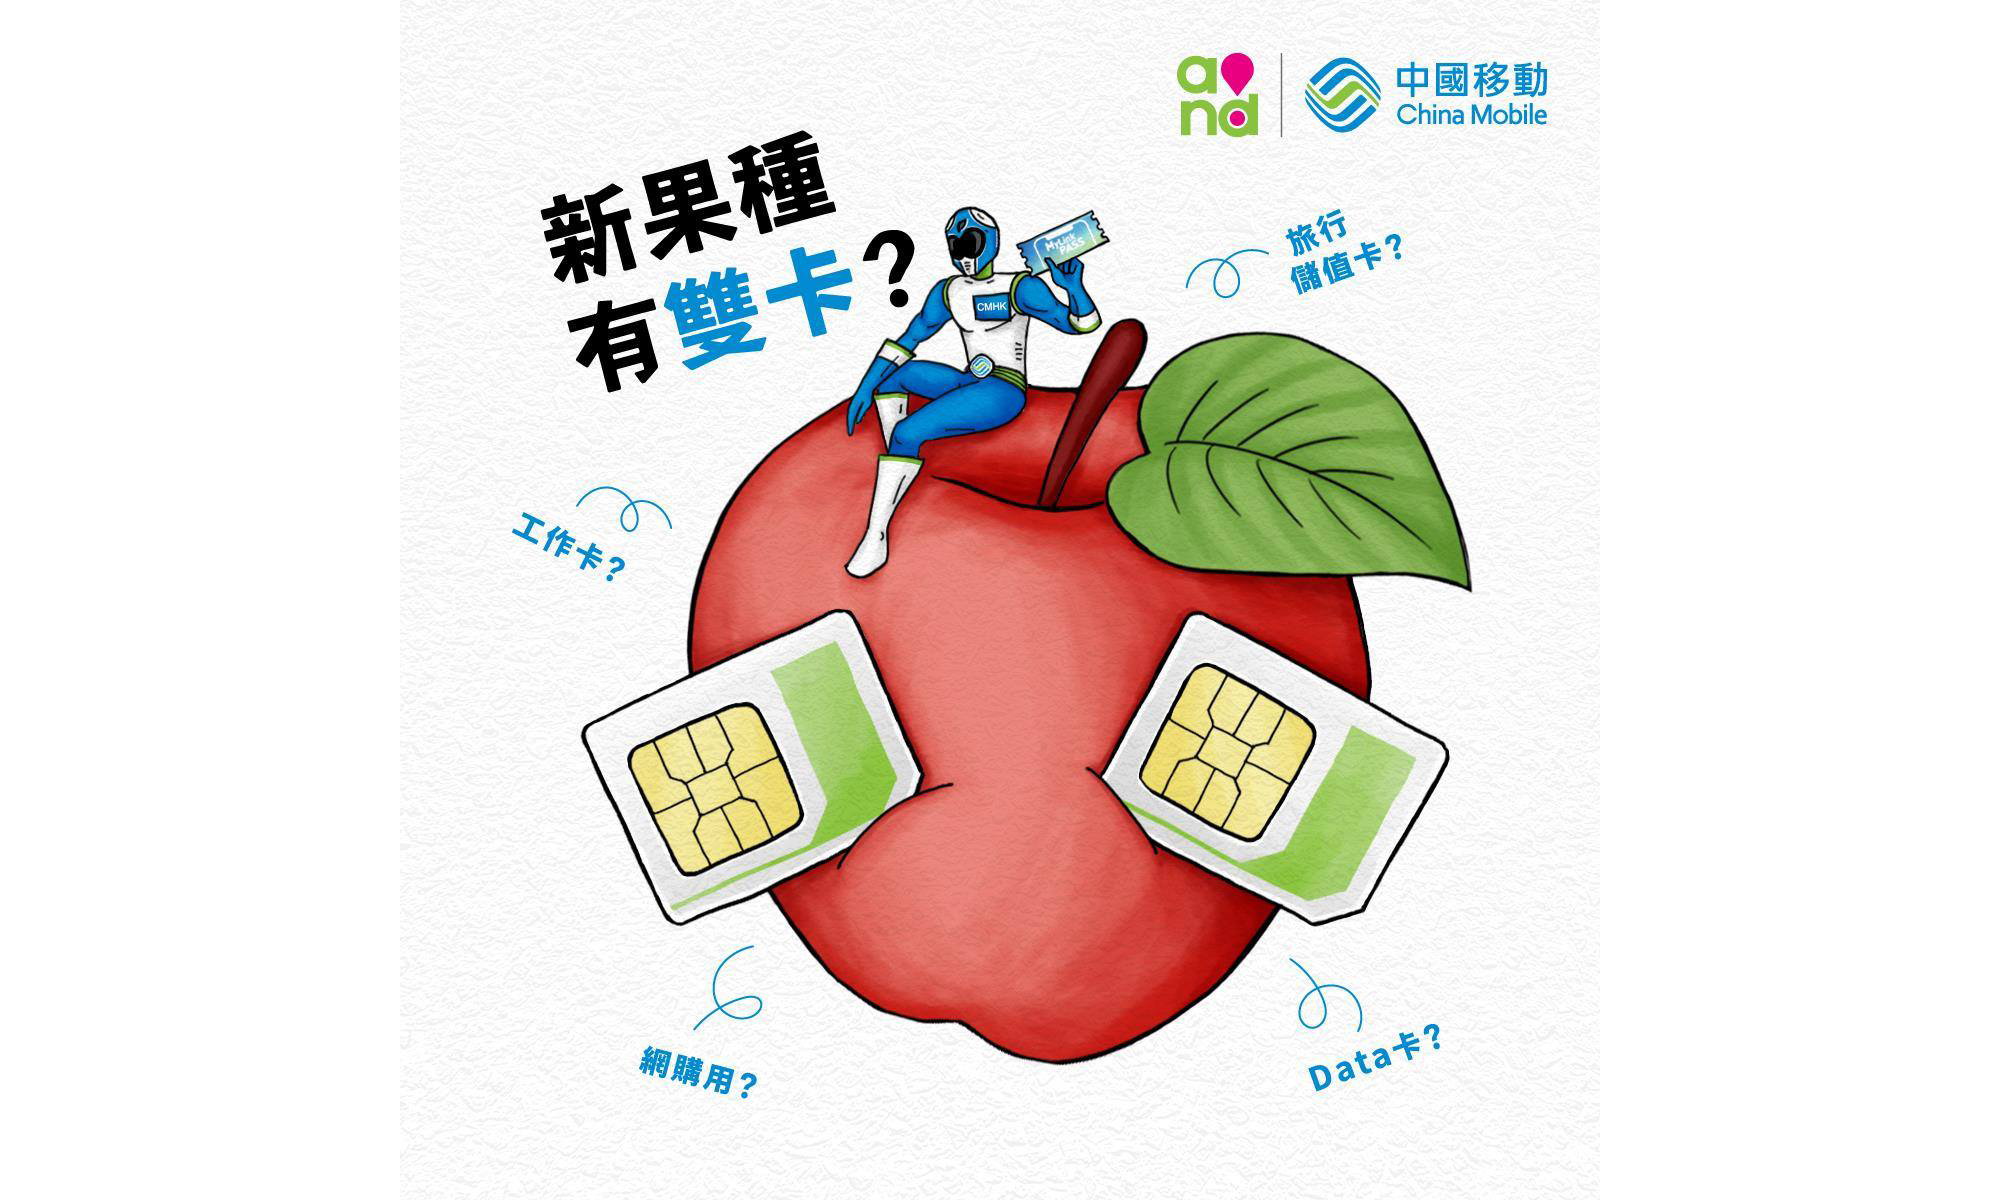 中国移动暗示双卡 iPhone 即将到来